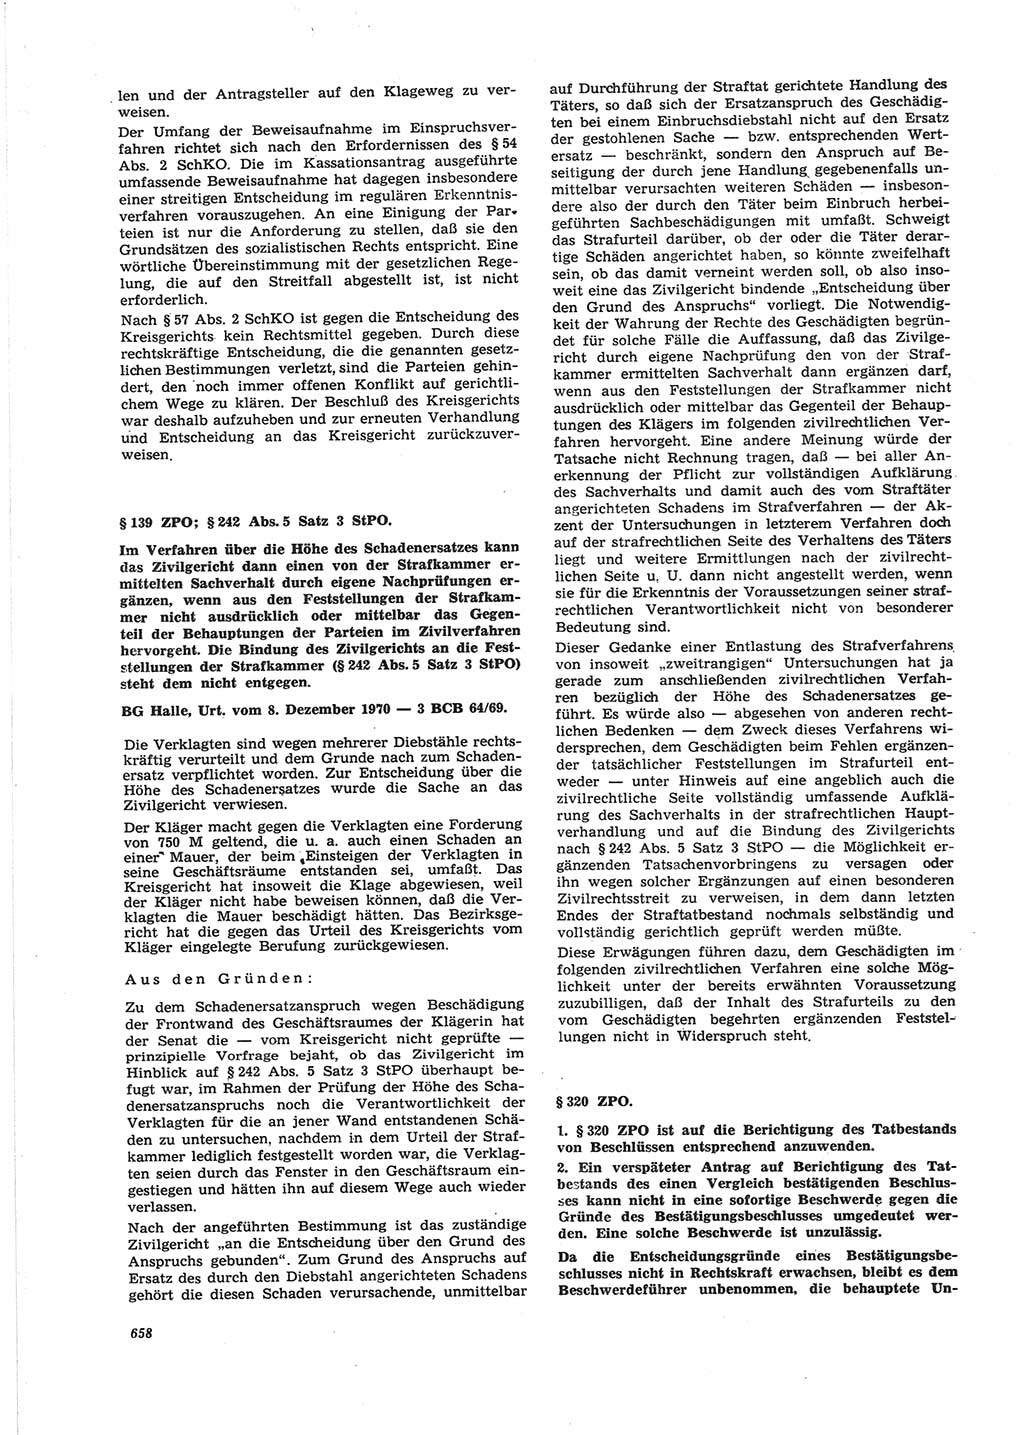 Neue Justiz (NJ), Zeitschrift für Recht und Rechtswissenschaft [Deutsche Demokratische Republik (DDR)], 25. Jahrgang 1971, Seite 658 (NJ DDR 1971, S. 658)